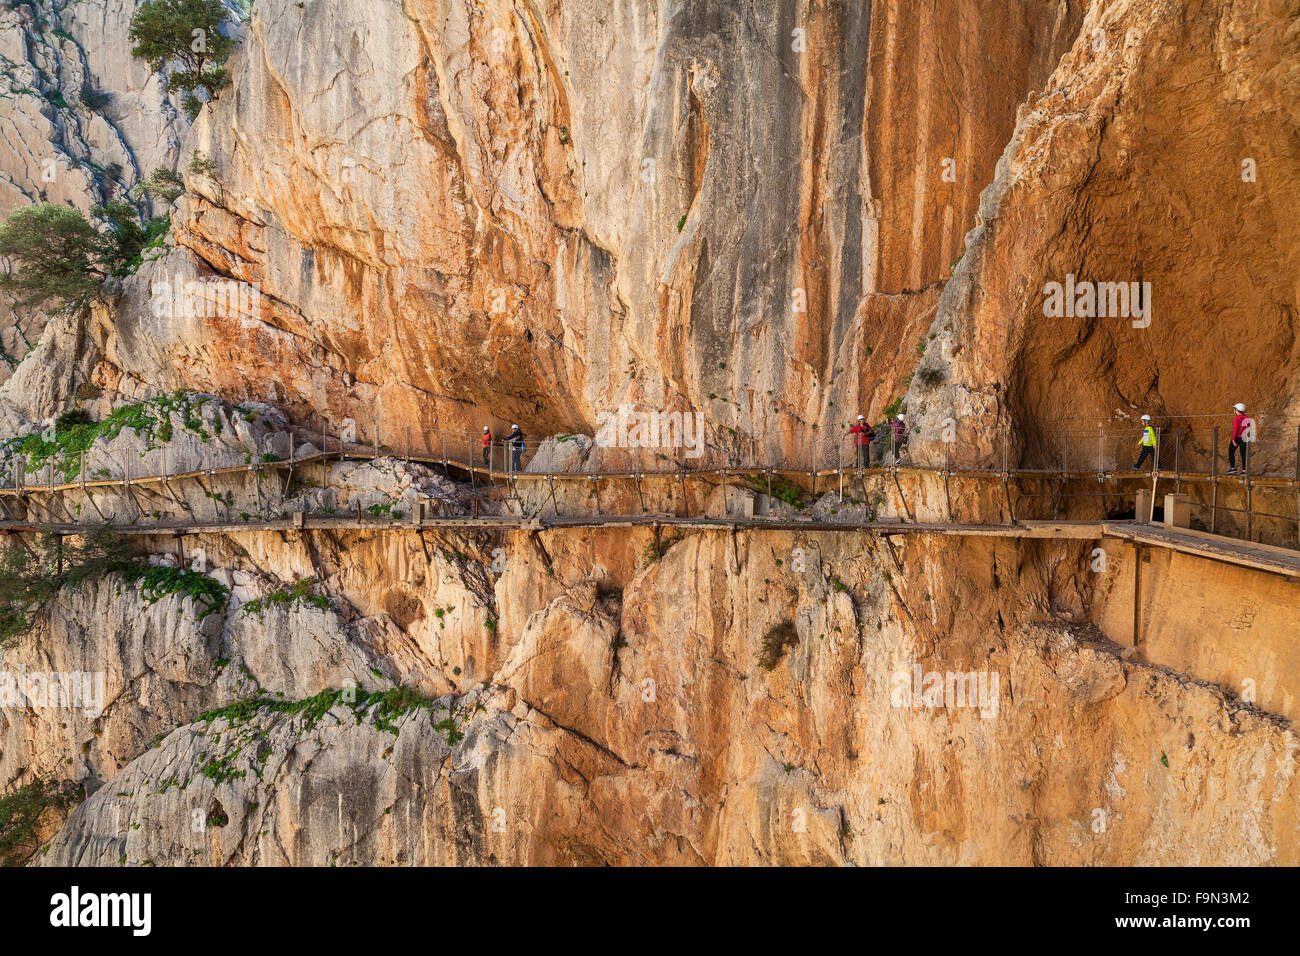 El Caminito del Rey è un passaggio pedonale, imperniato lungo le ripide pareti di una stretta gola a El Chorro, provincia di Malaga, Andalusia, Spagna Foto Stock